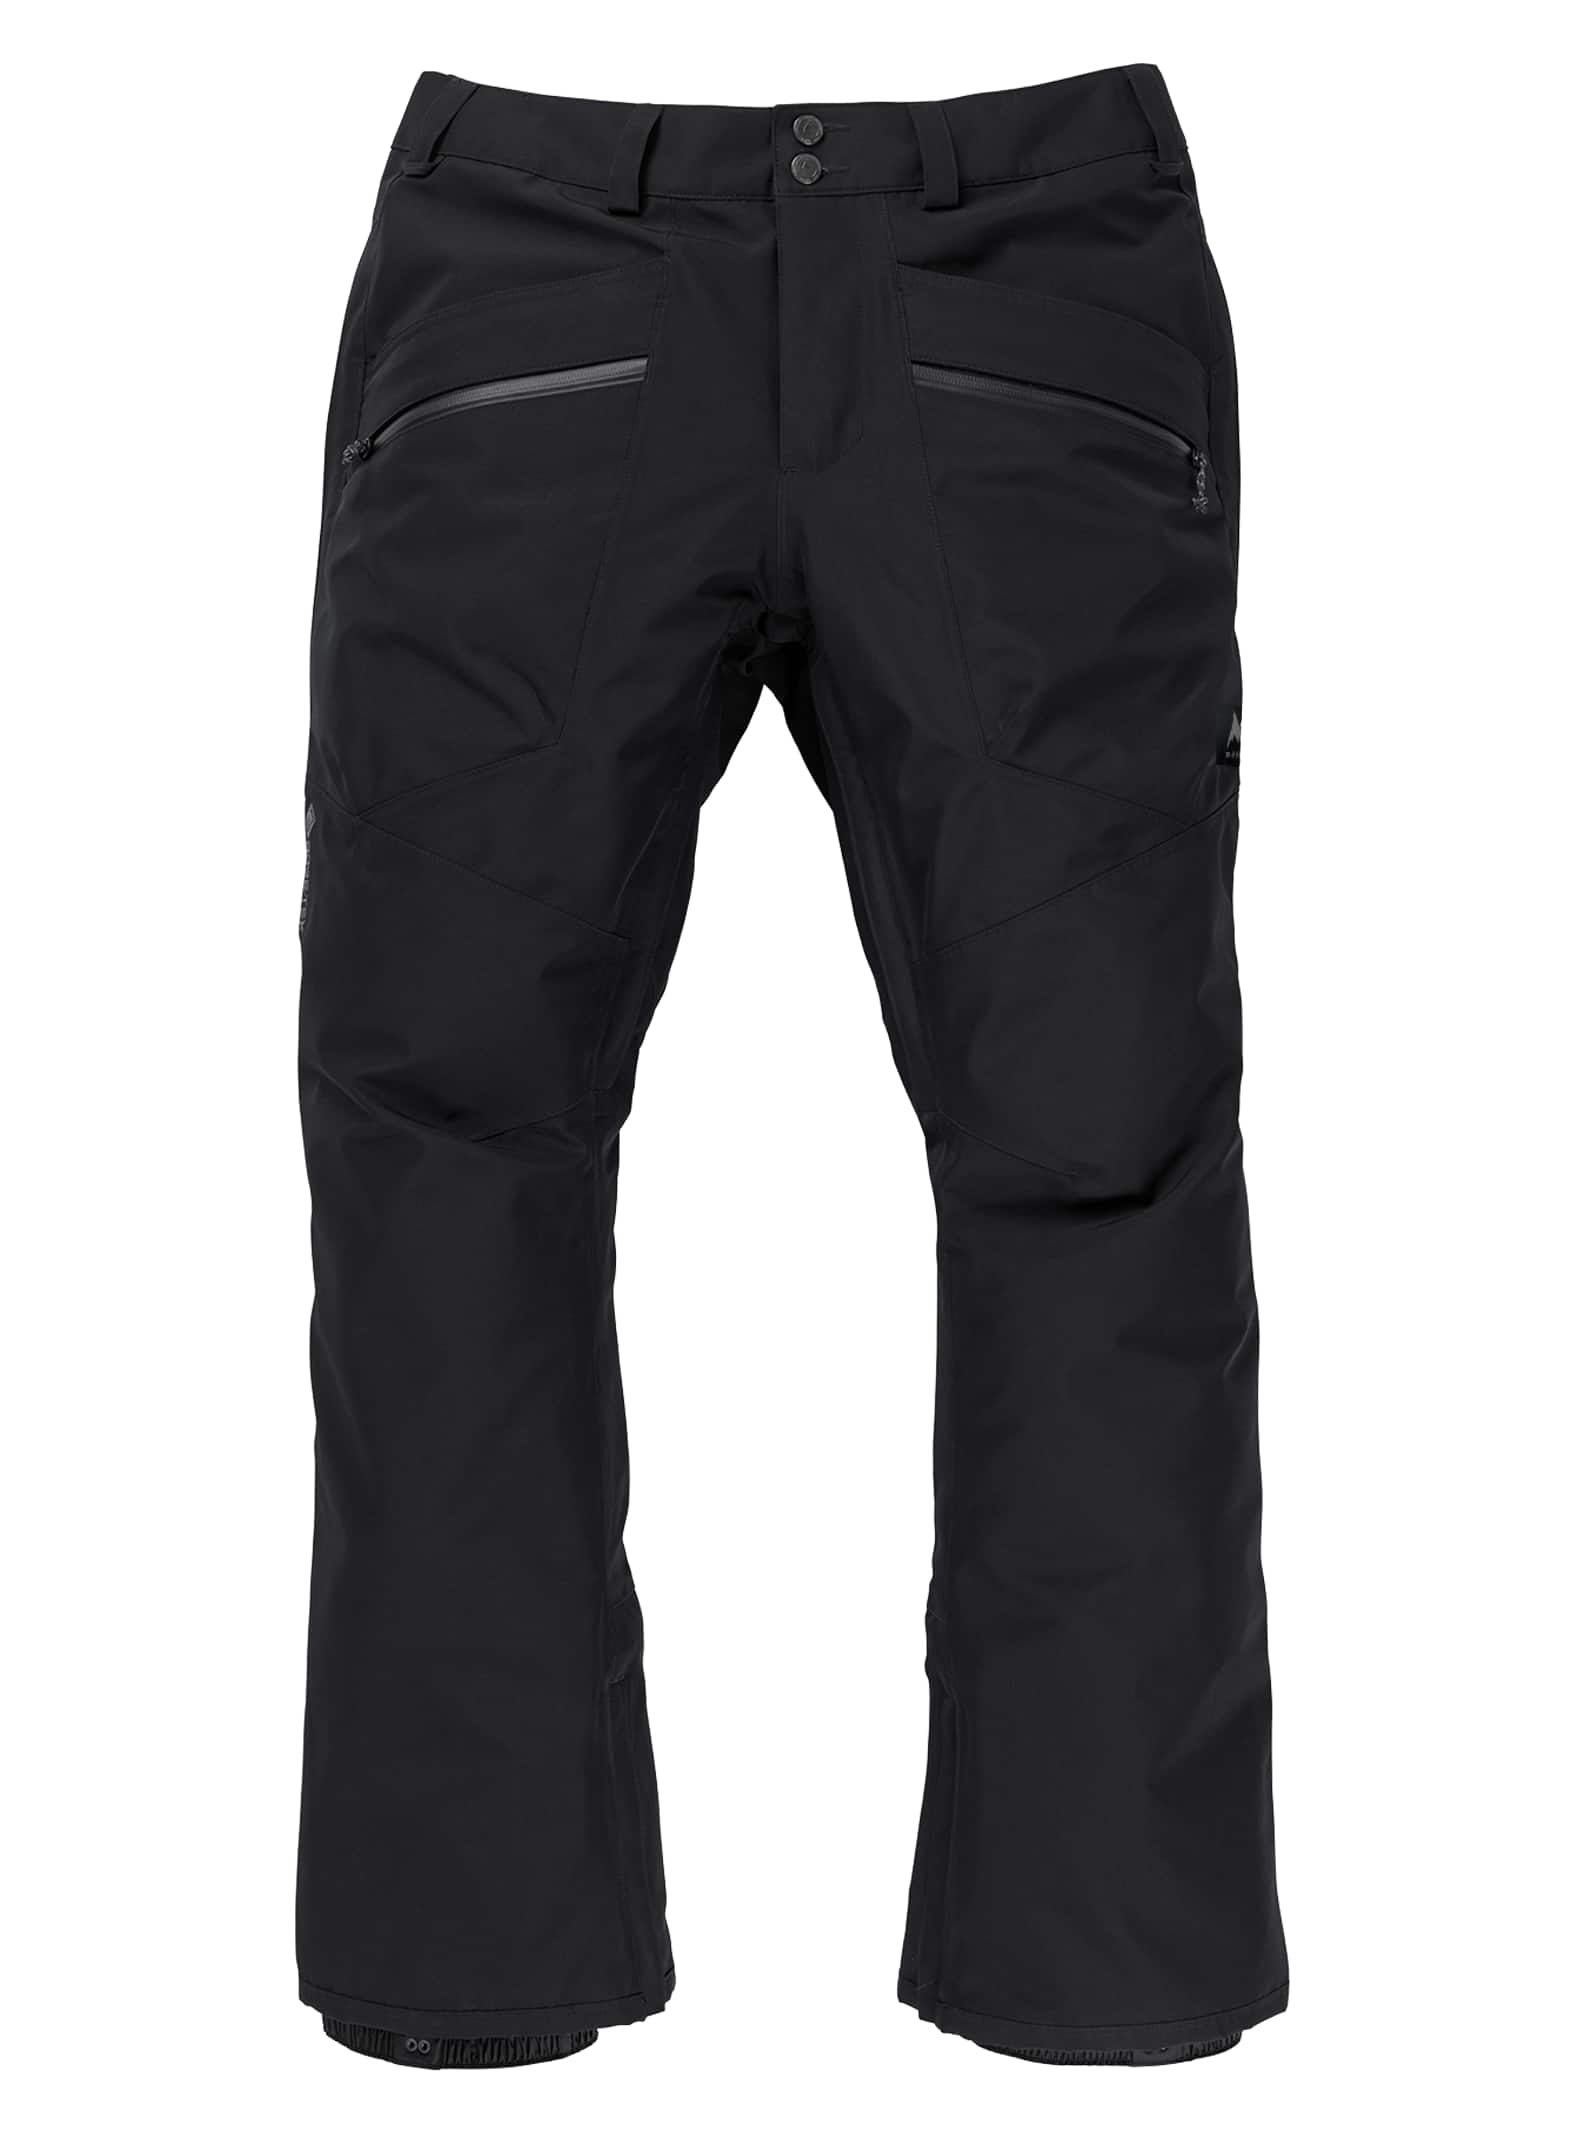 Men's Vent GORE-TEX 2L Pants | Burton.com Winter 2023 US